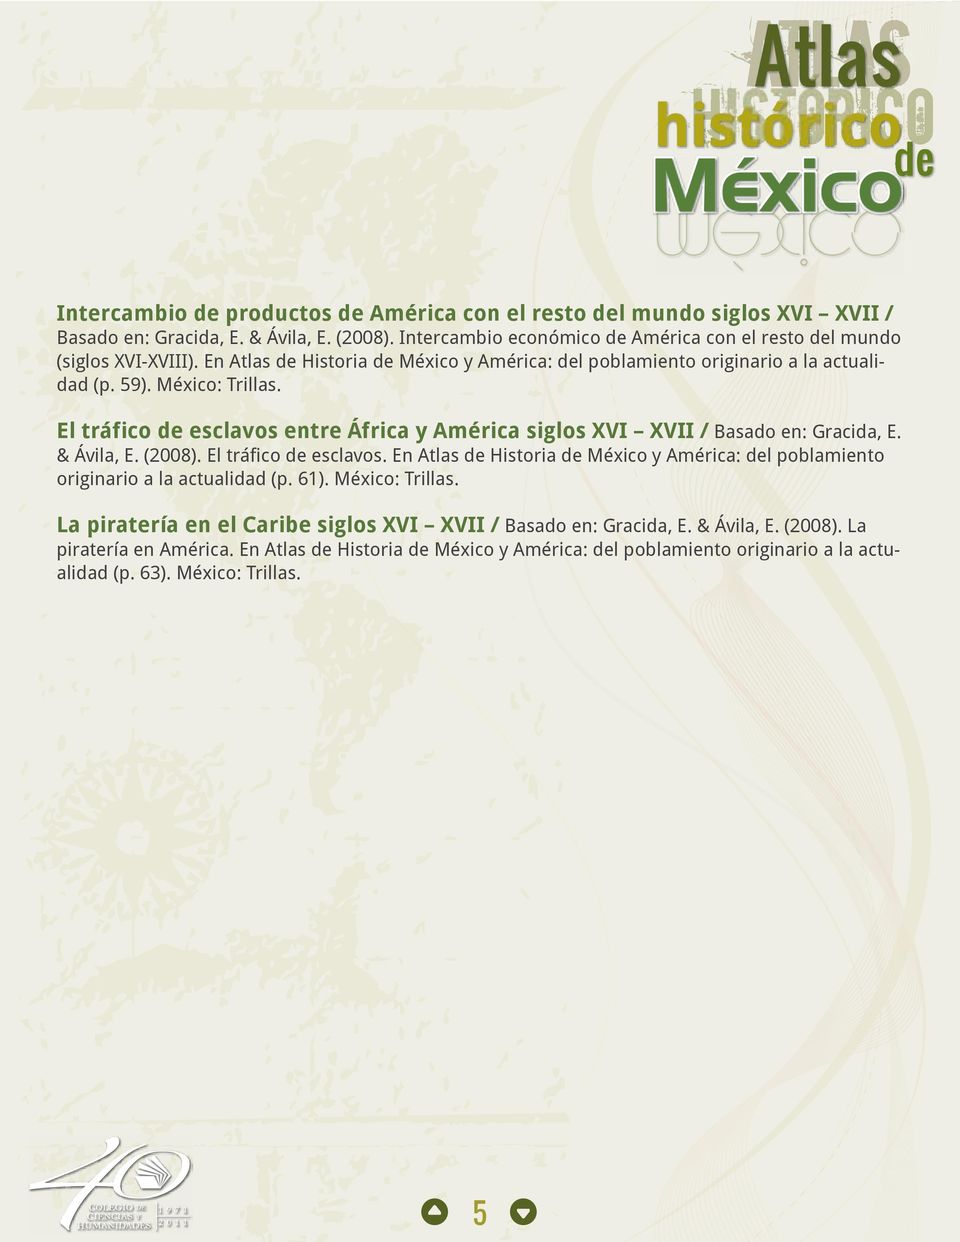 El tráfico de esclavos entre África y América siglos XVI XVII / Basado en: Gracida, E. & Ávila, E. (2008). El tráfico de esclavos.